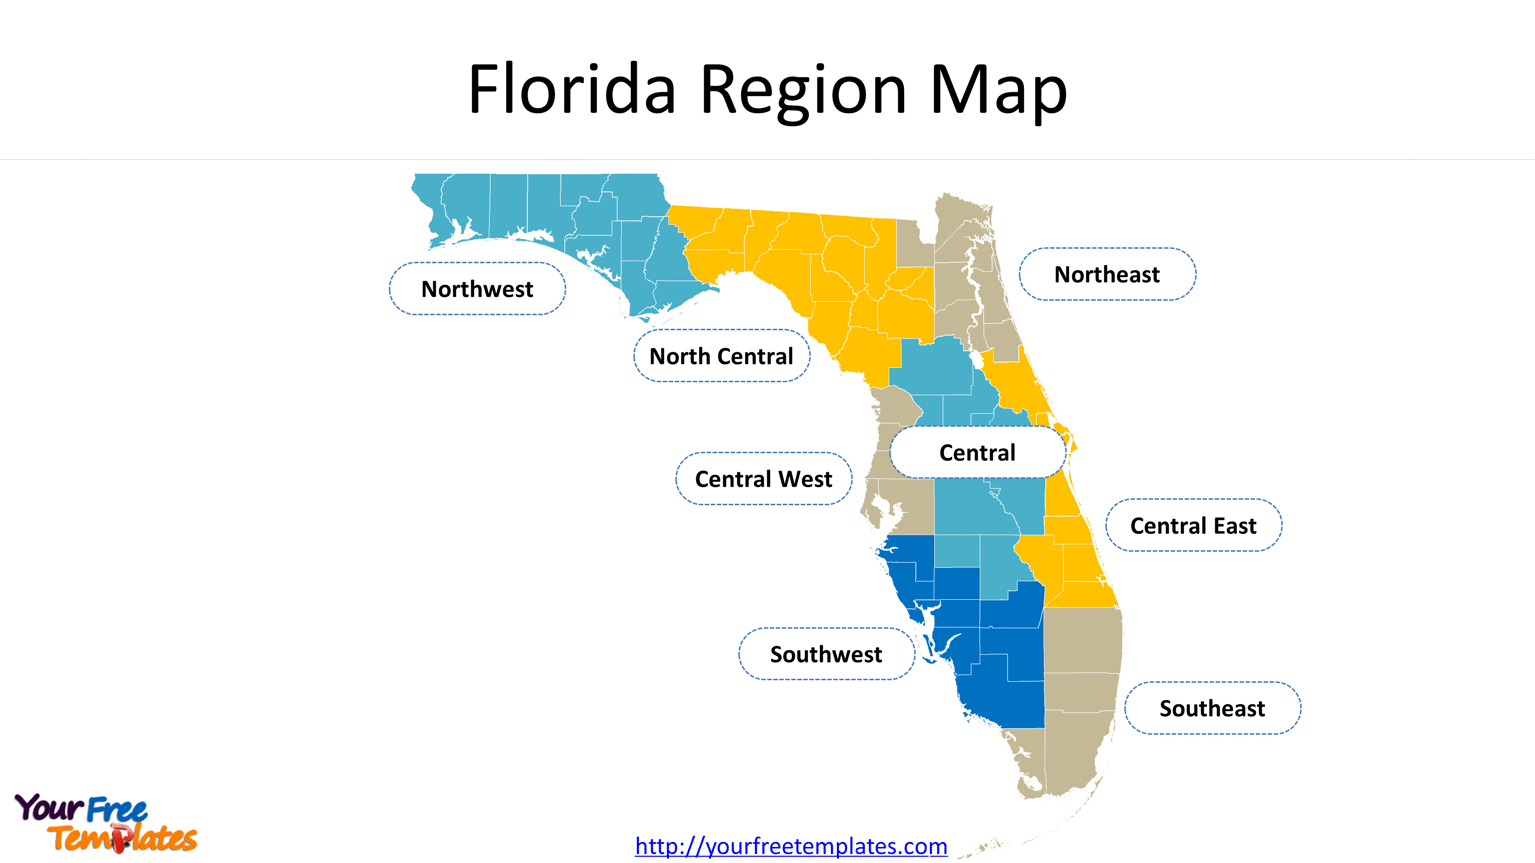 Florida region map with 8 regions